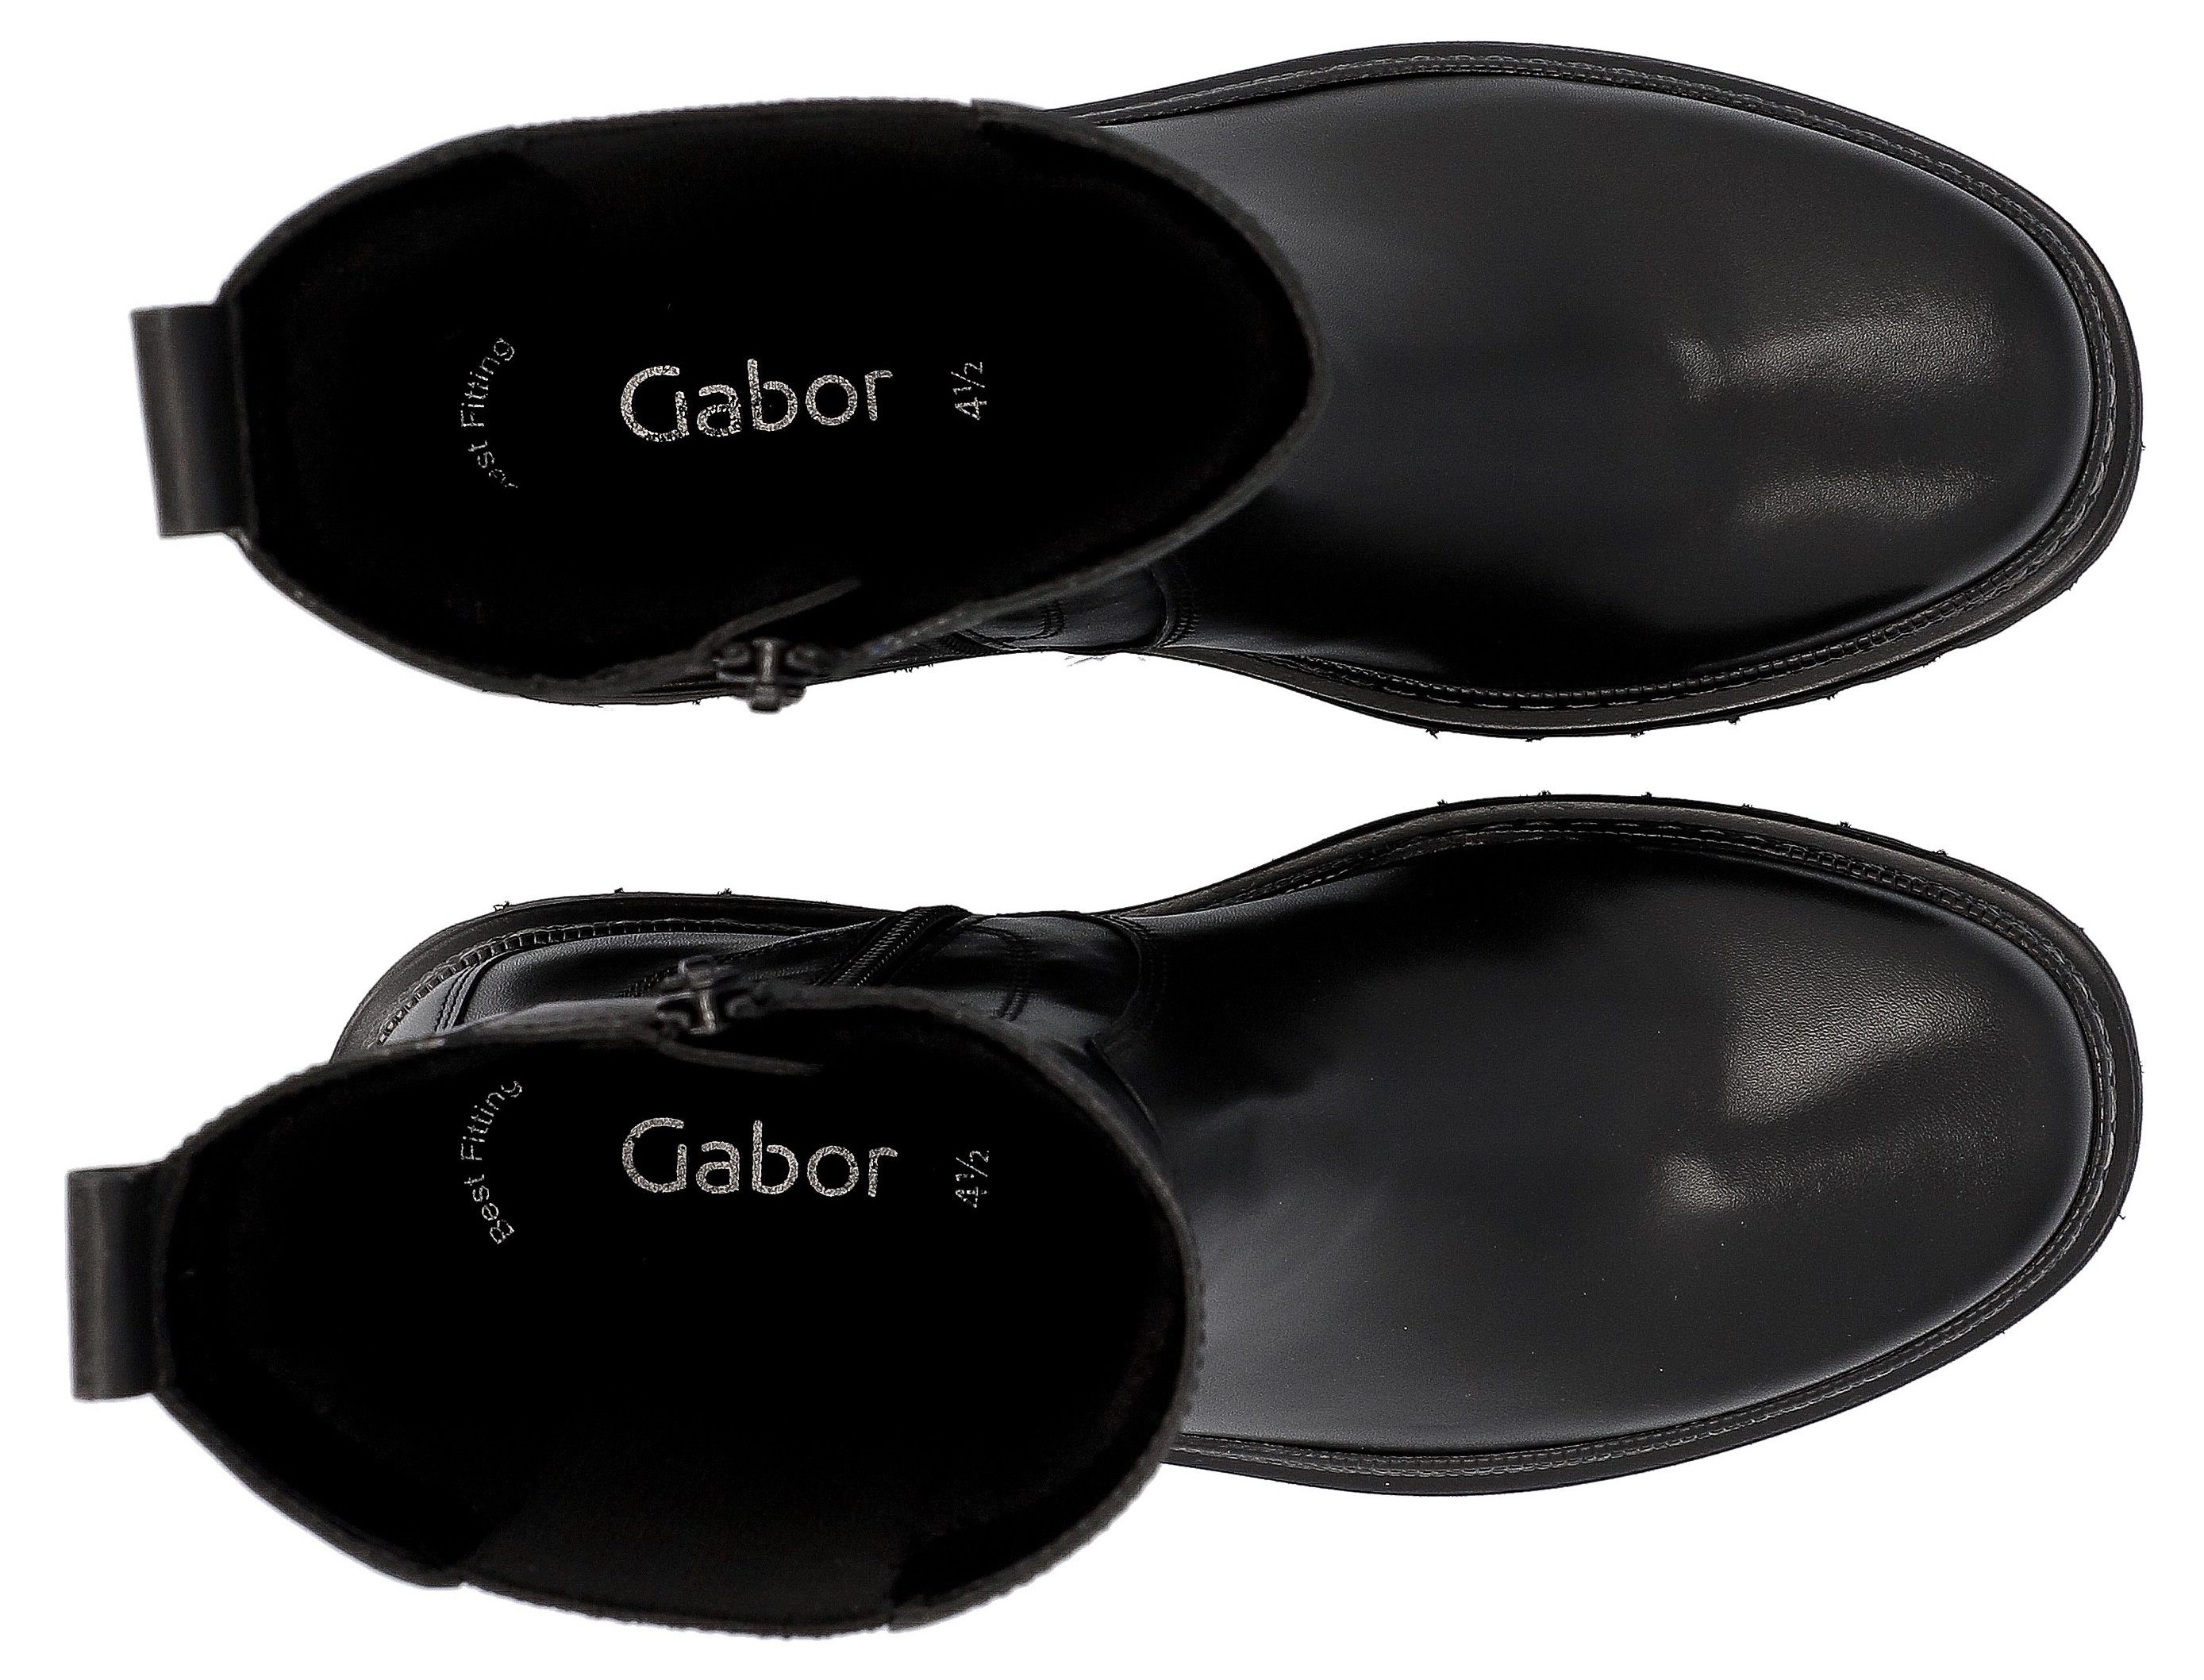 mit schwarz-weiß Best Fitting Chelseaboots Ausstattung Gabor